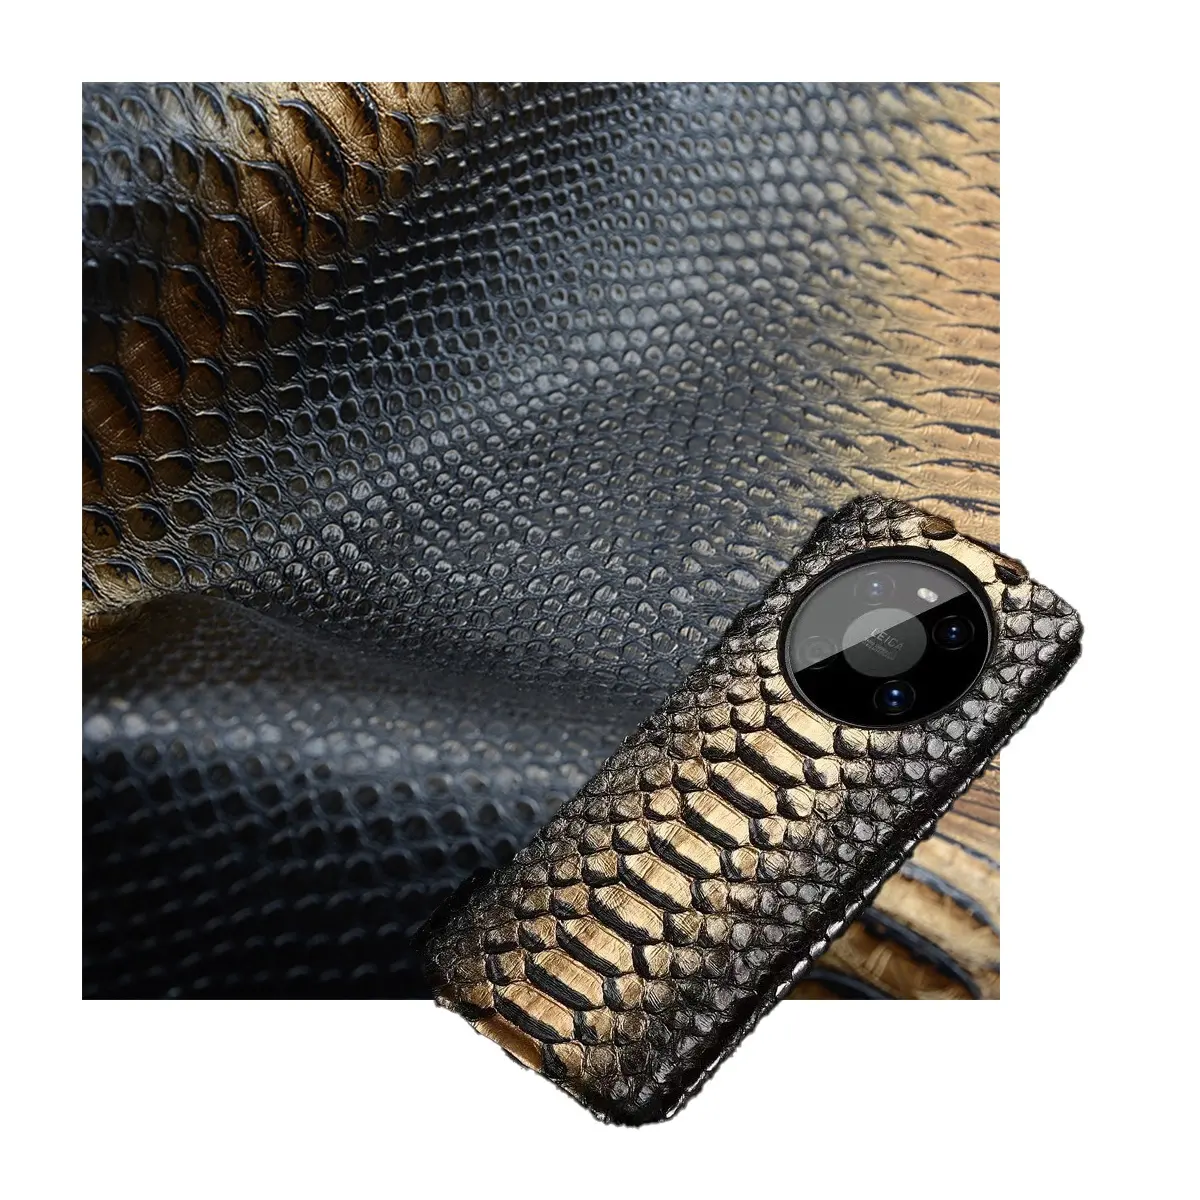 Faux cuir artificiel végétalien en pvc synthétique imprimé serpent pour sac à chaussures